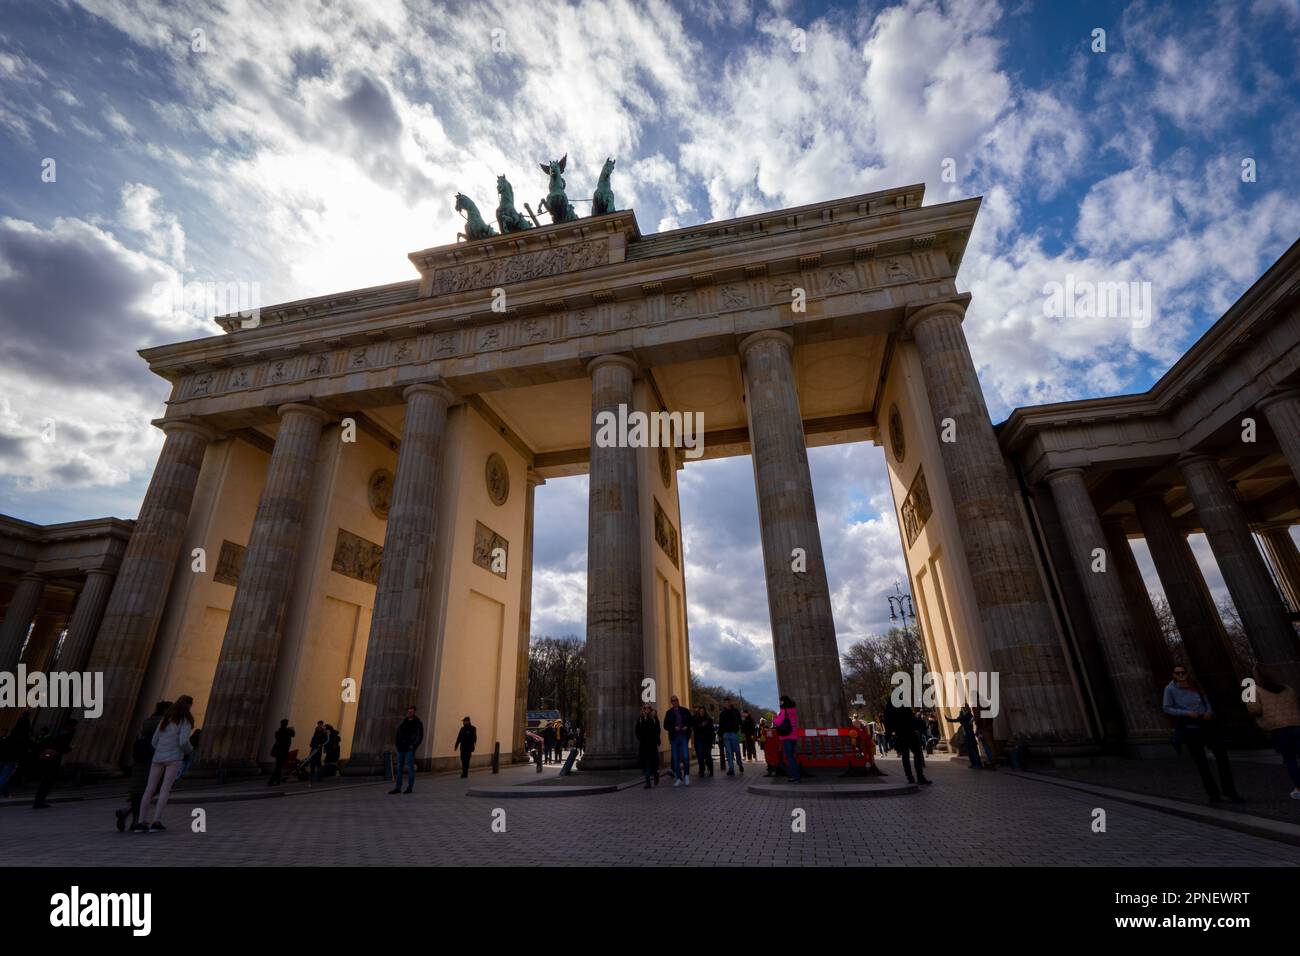 Das Brandenburger Tor ein neoklassizistisches Denkmal aus dem 18. Jahrhundert in Berlin, erbaut auf Befehl des preußischen Königs Frederick Willia Stockfoto